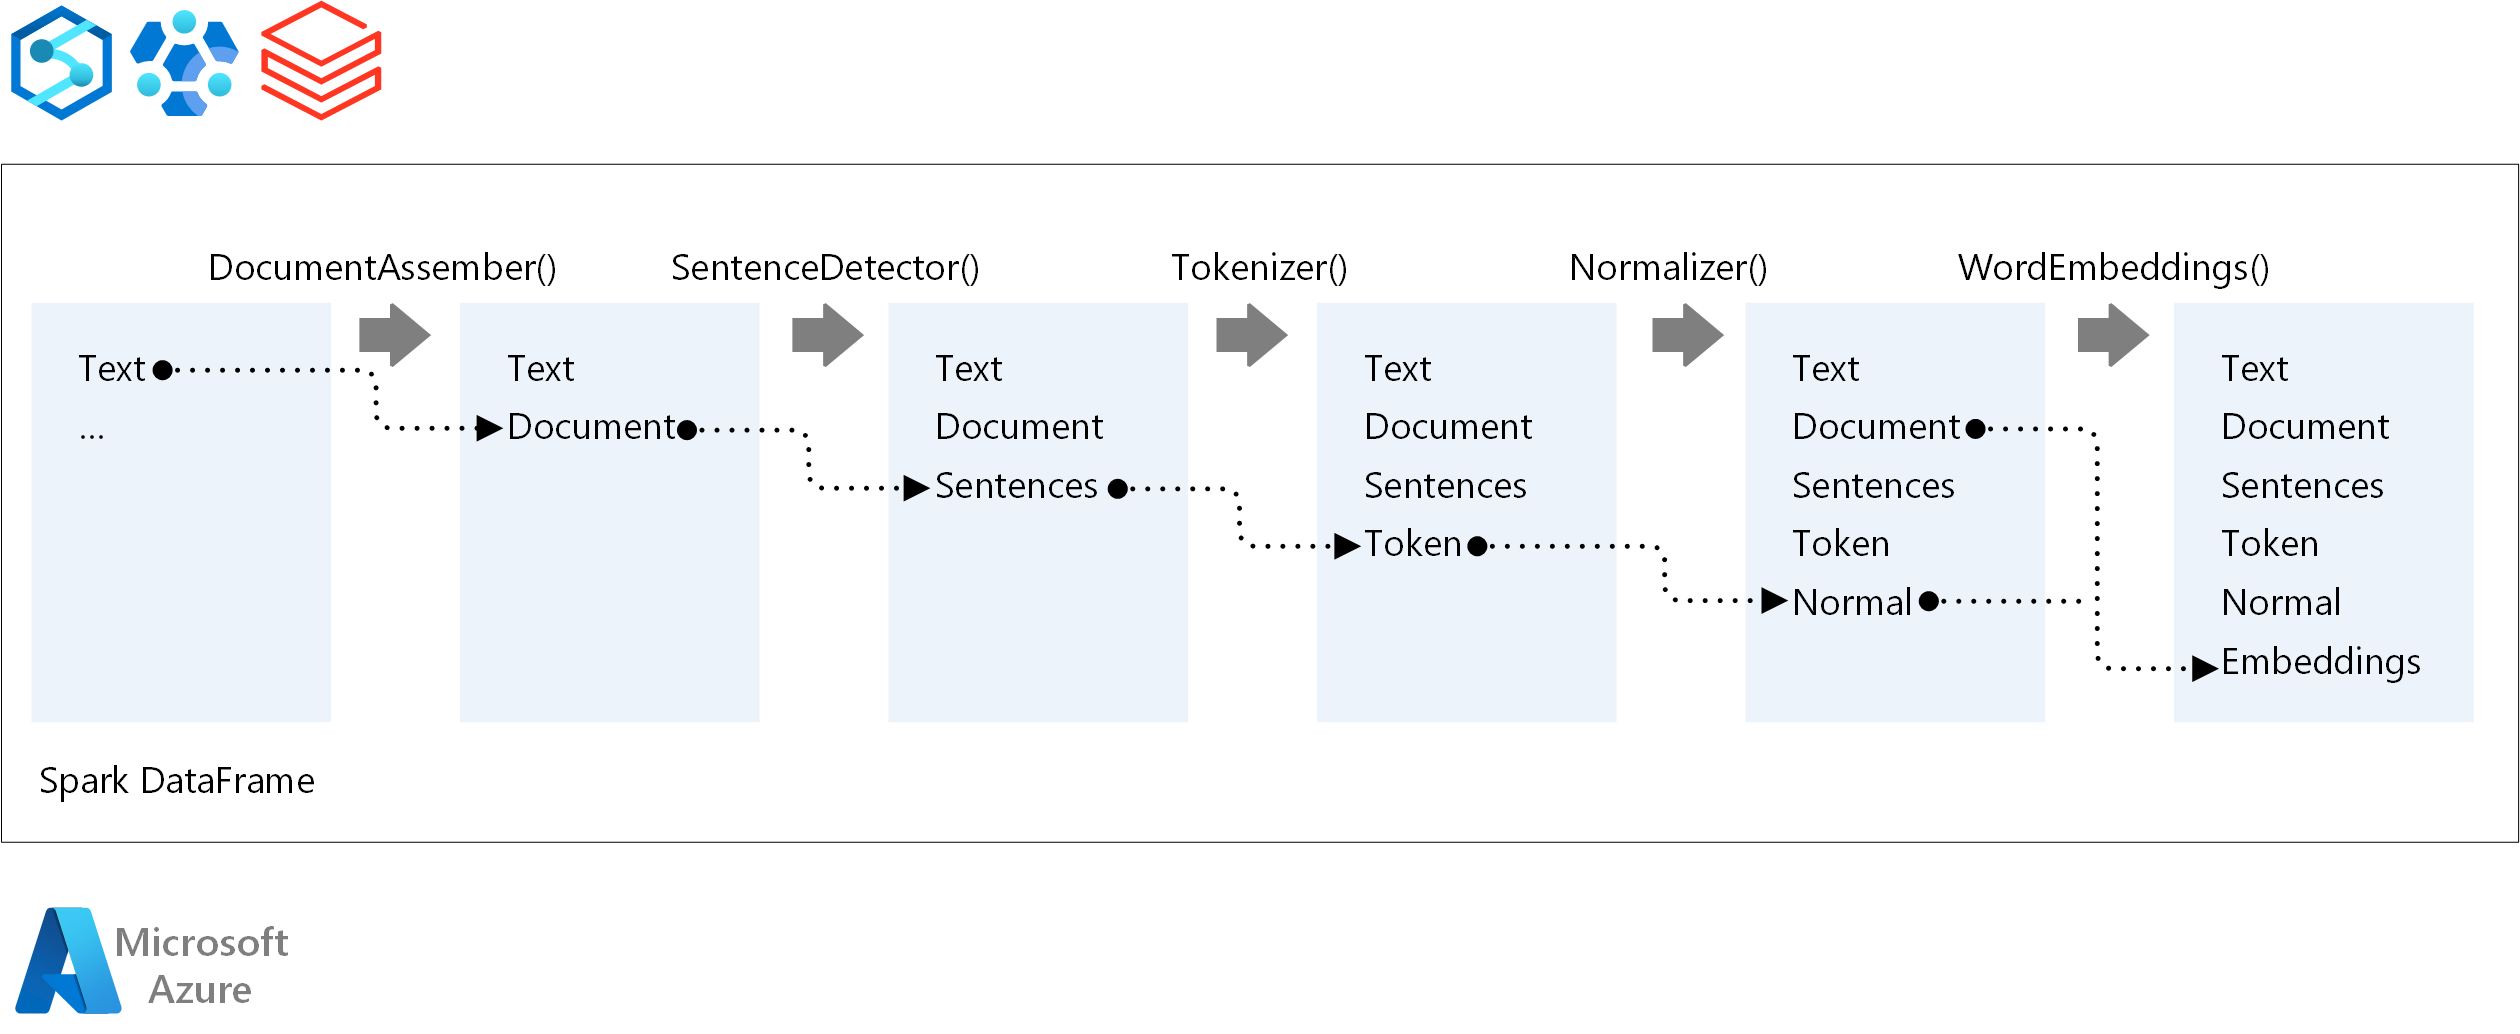 Diagrama que mostra os estágios do pipeline N L P, como montagem de documentos, detecção de frases, tokenização, normalização e incorporação de palavras.